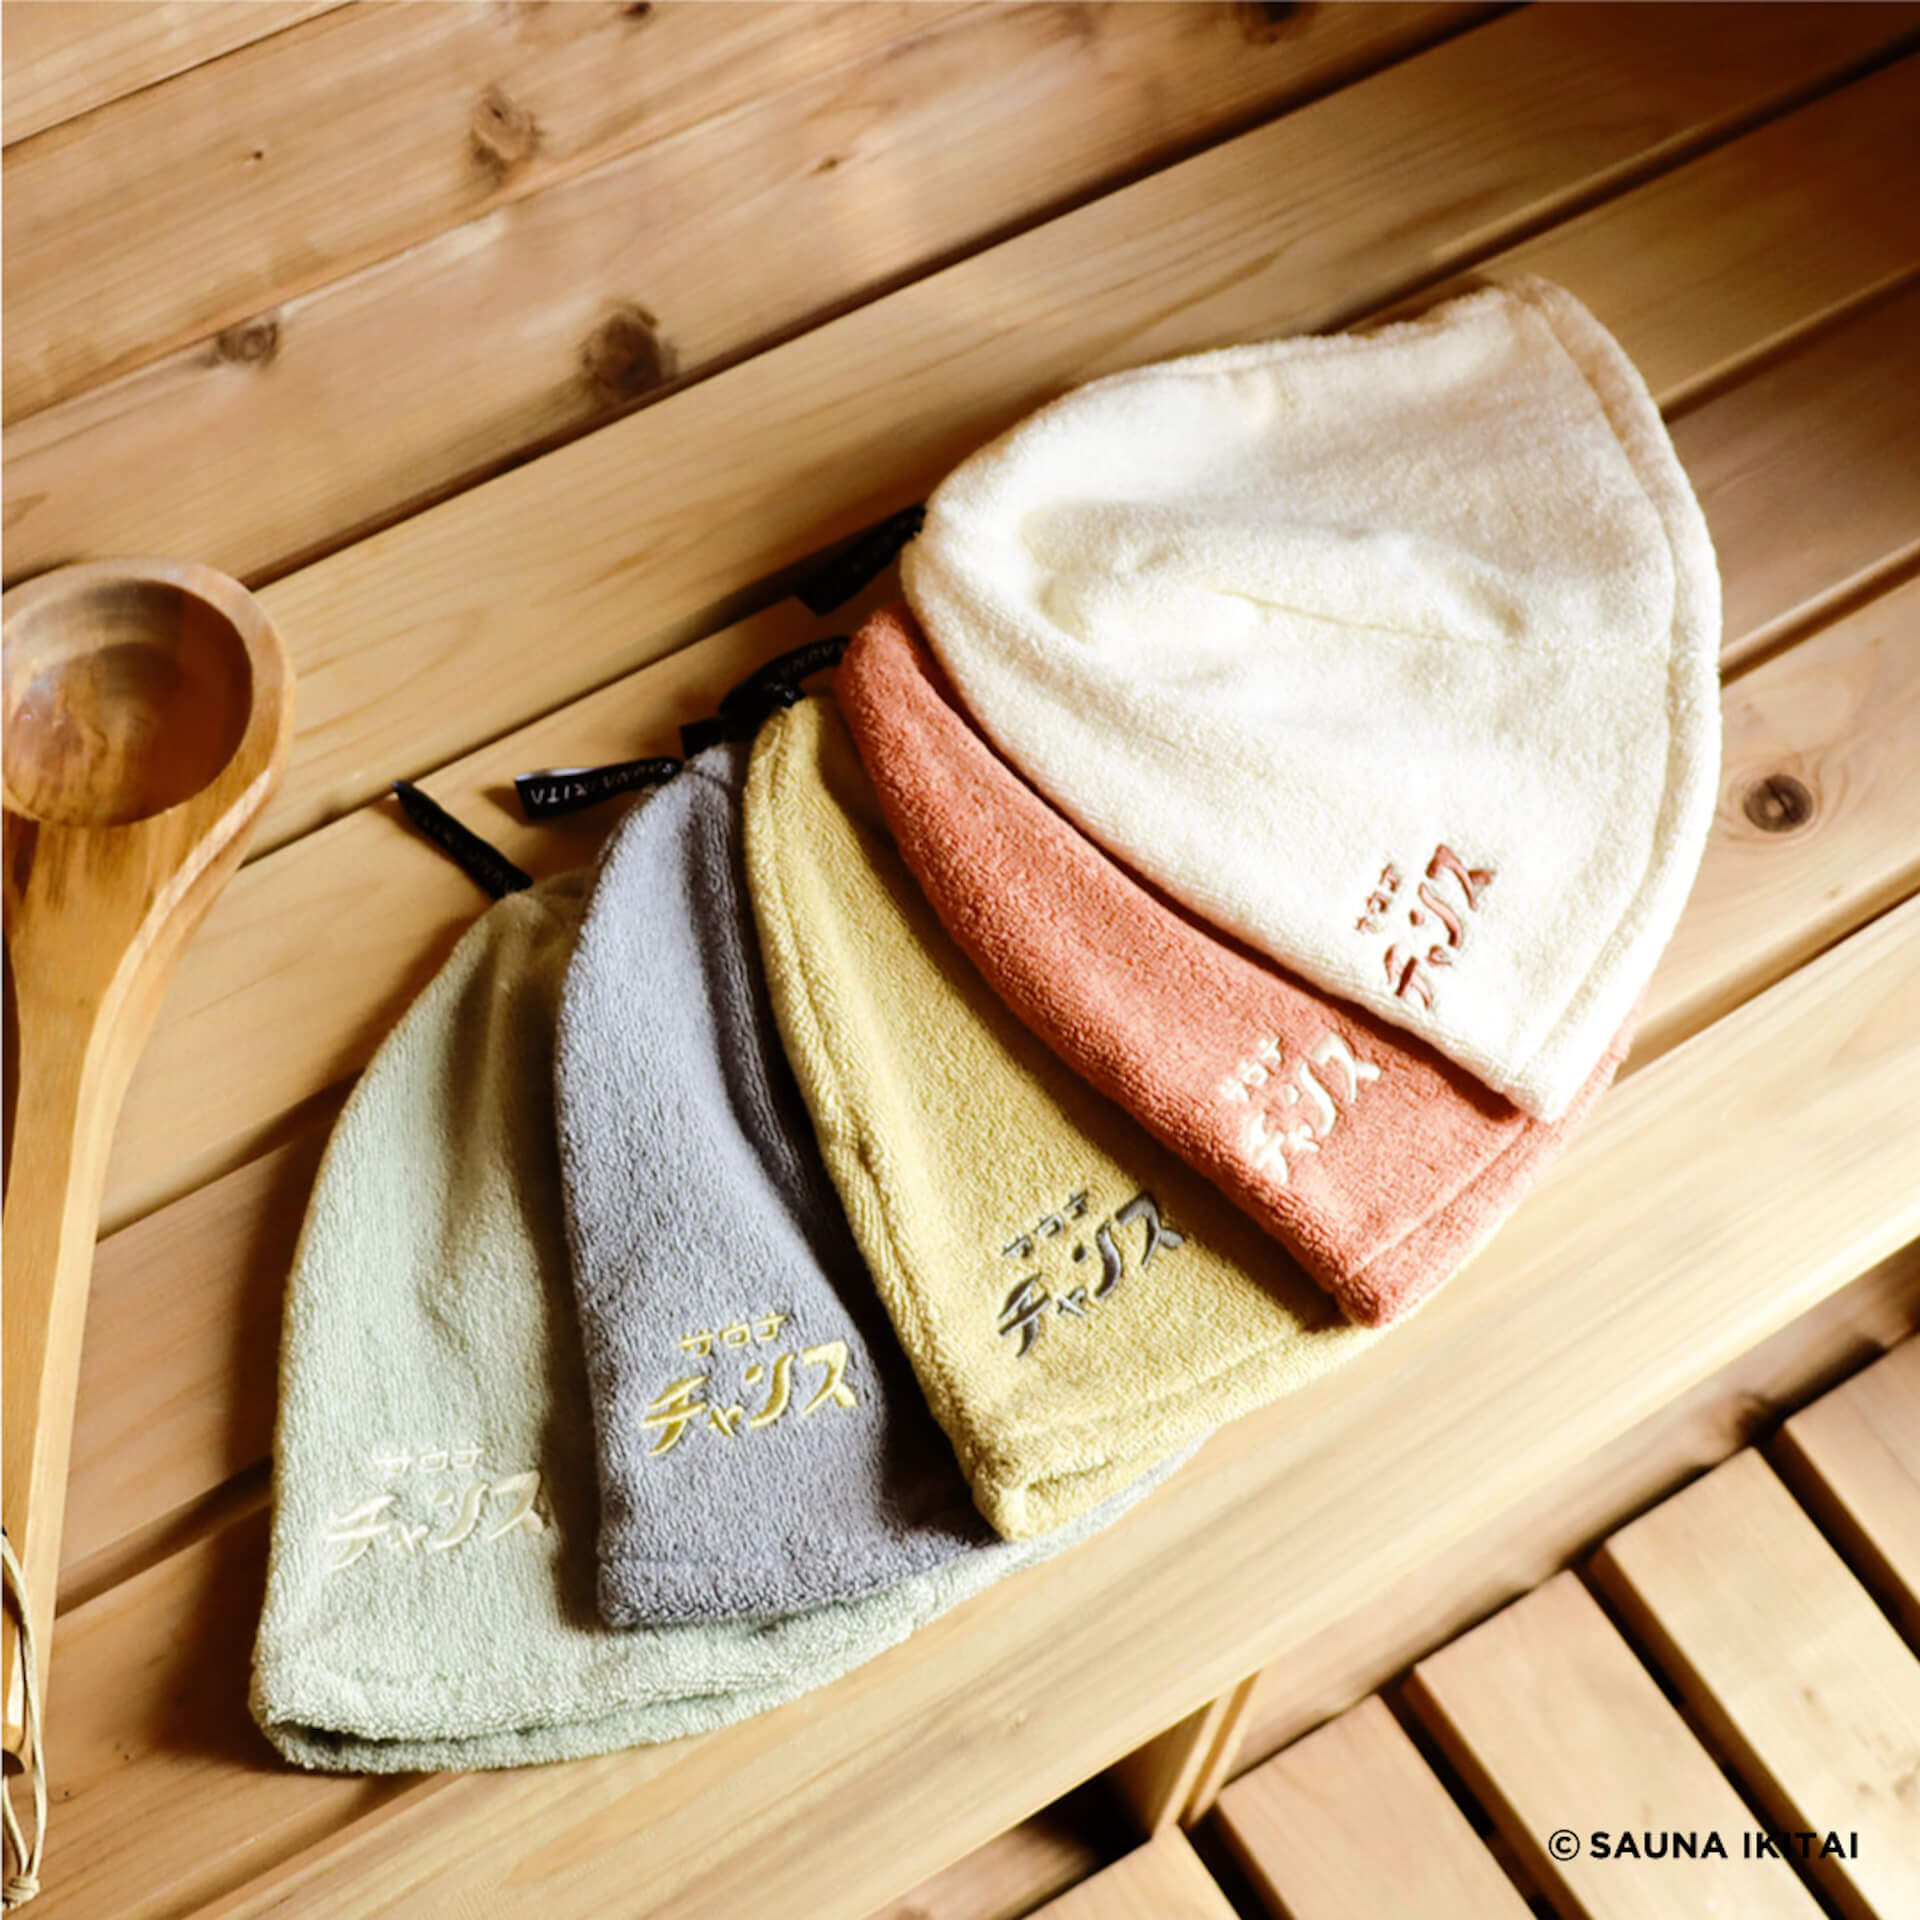 “サウナイキタイ×3COINS”タッグを組んだサウナグッズが発売決定！ fashion221025-sauna-ikitai-03